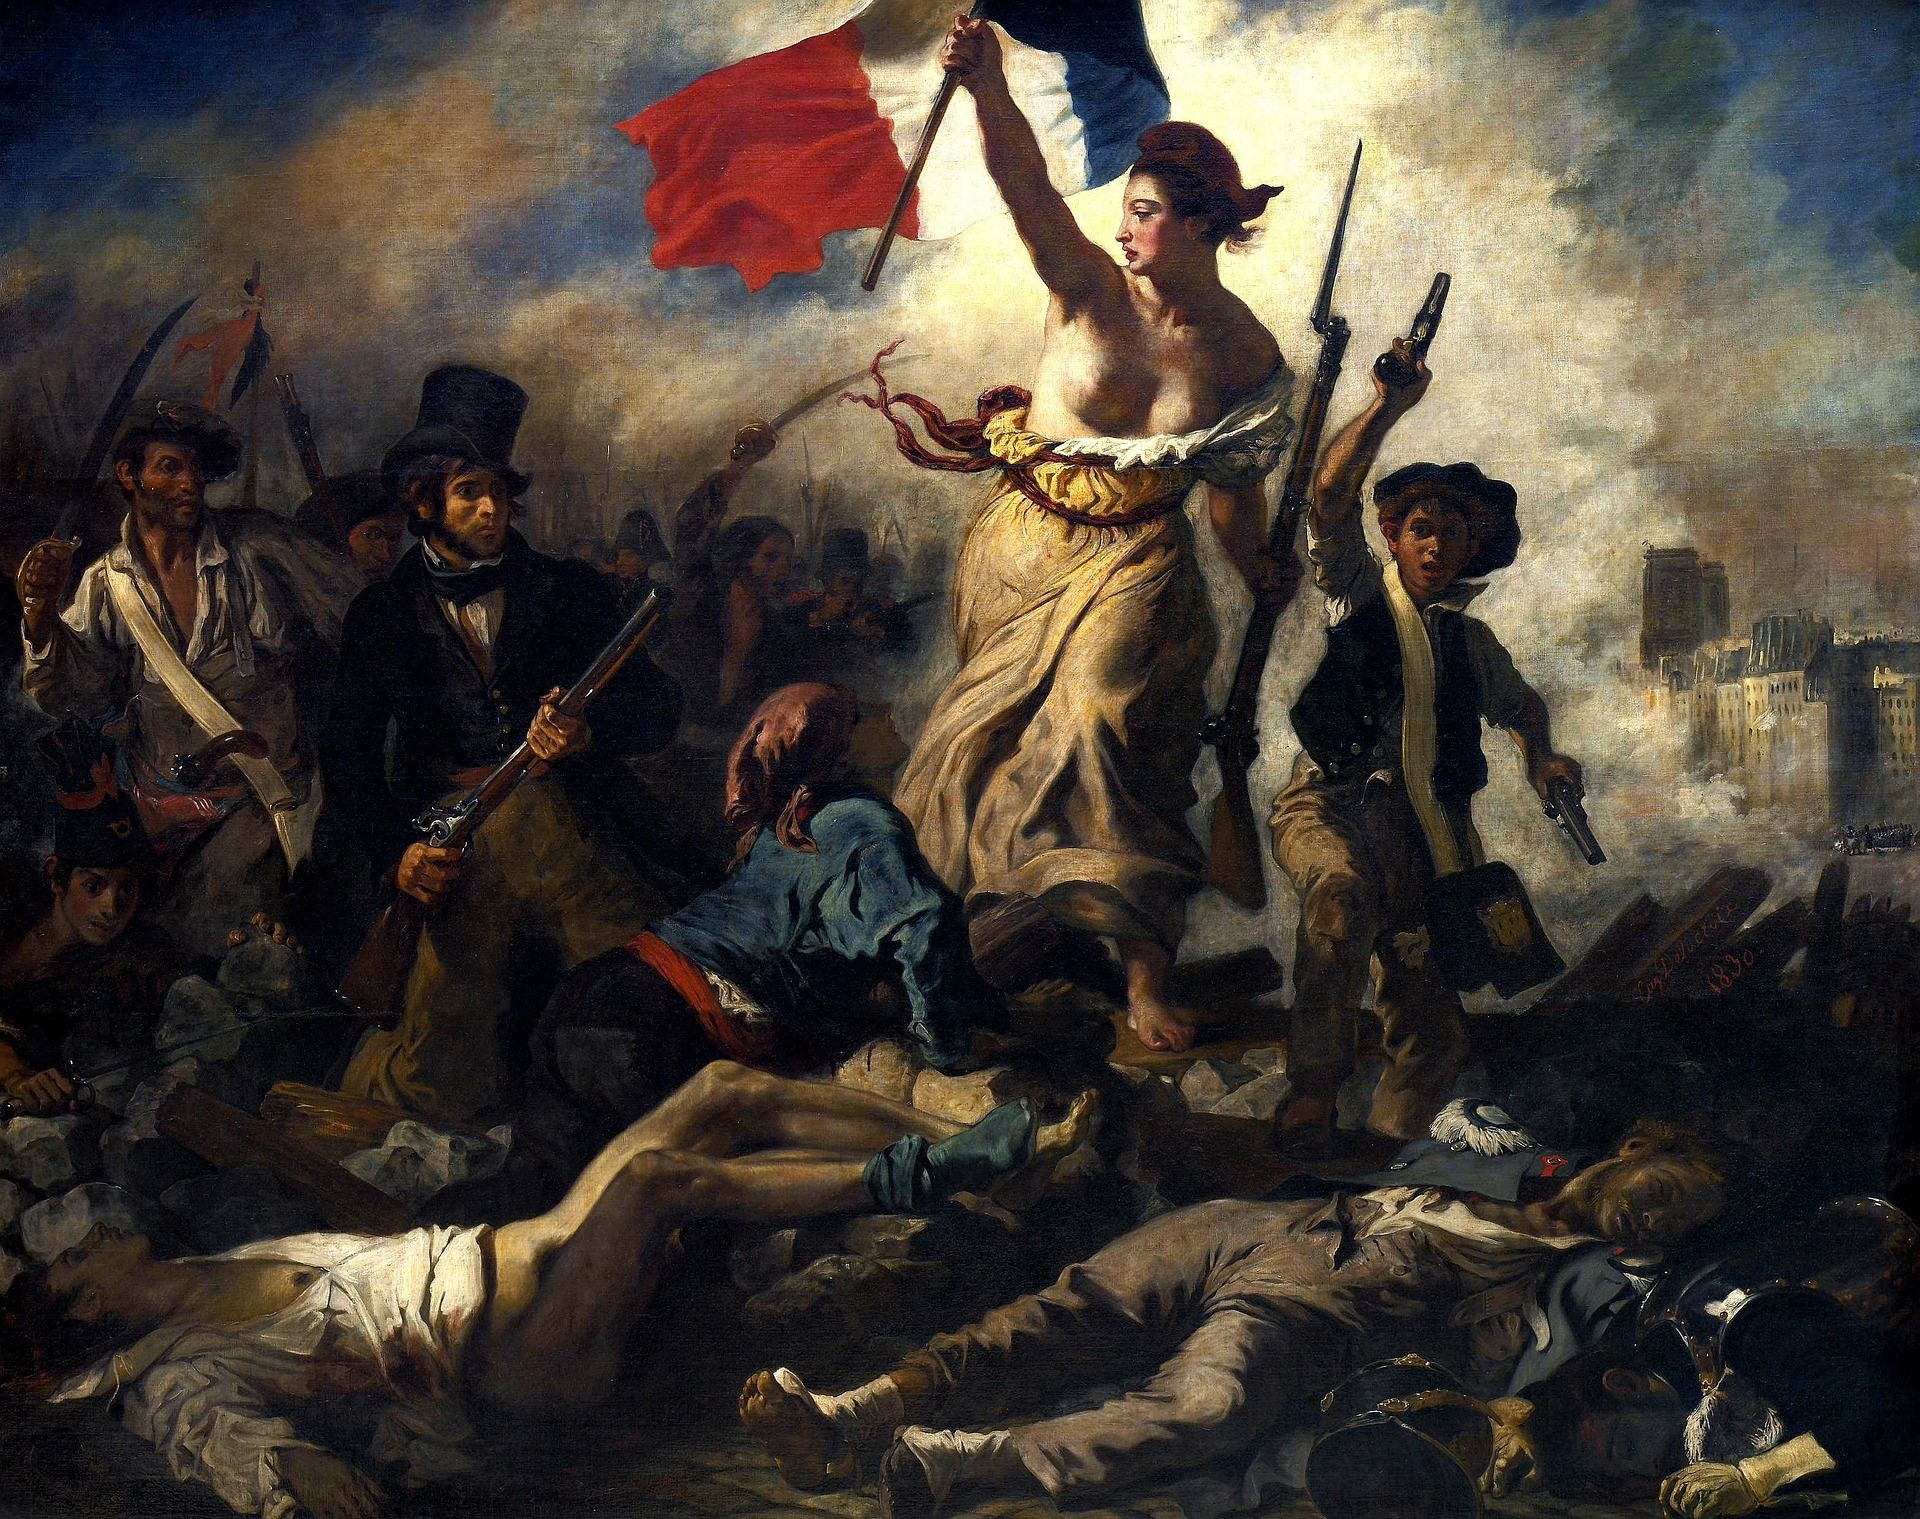 "החירות מובילה את העם" ציור של אז'ן דלקרואה, מתוך אתר Pixabay